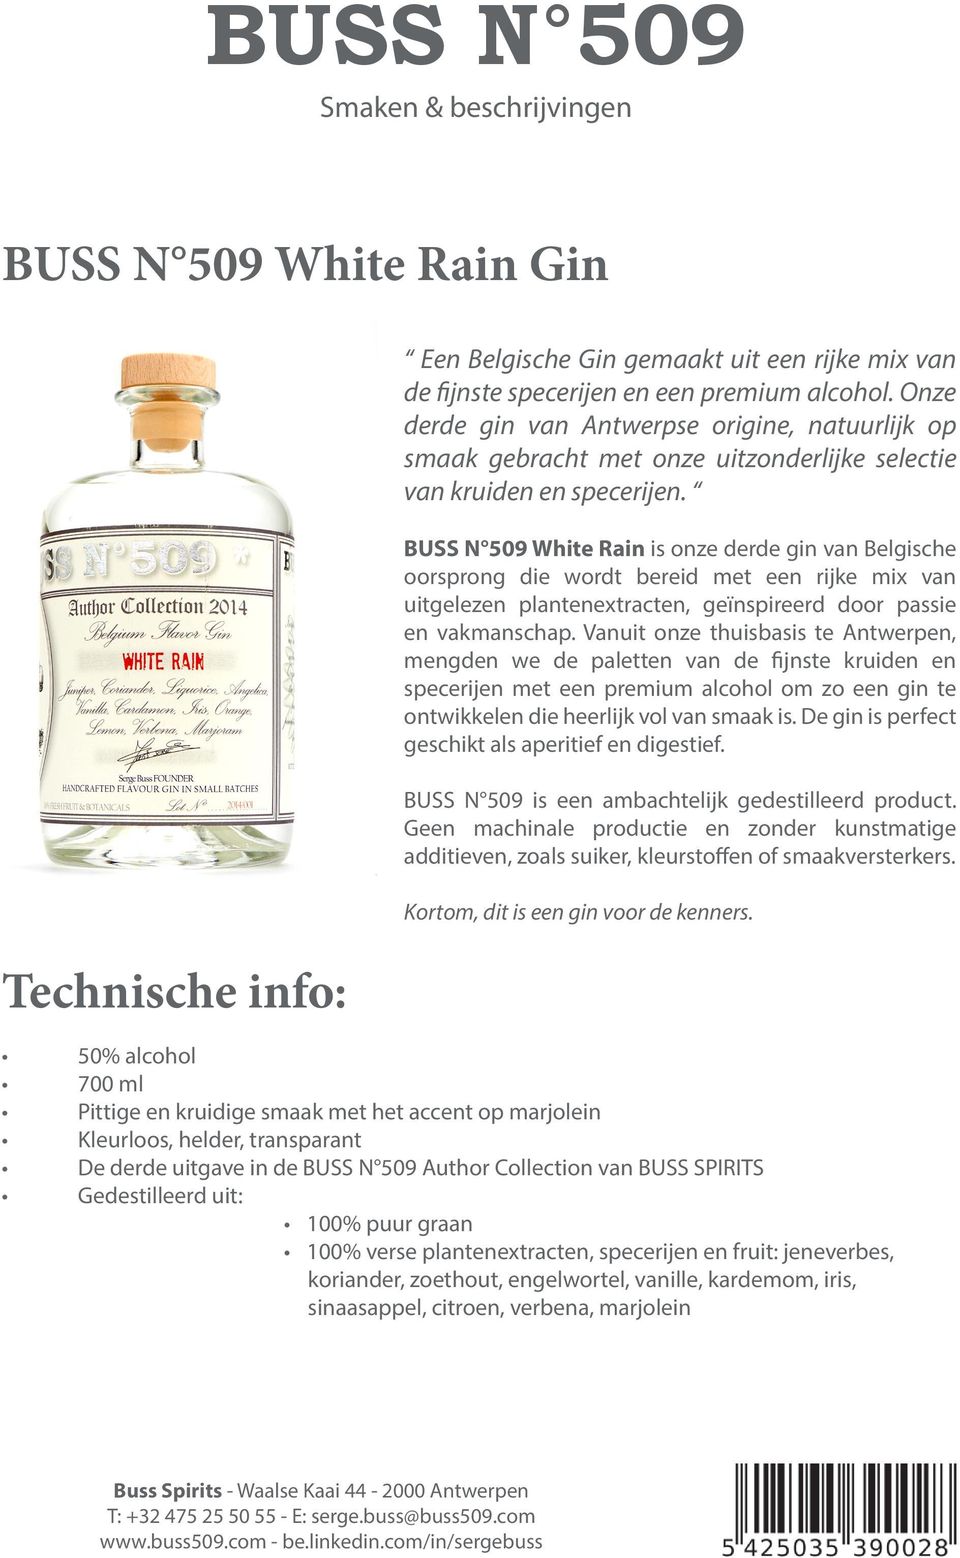 BUSS N 509 White Rain is onze derde gin van Belgische oorsprong die wordt bereid met een rijke mix van uitgelezen plantenextracten, geïnspireerd door passie en vakmanschap.